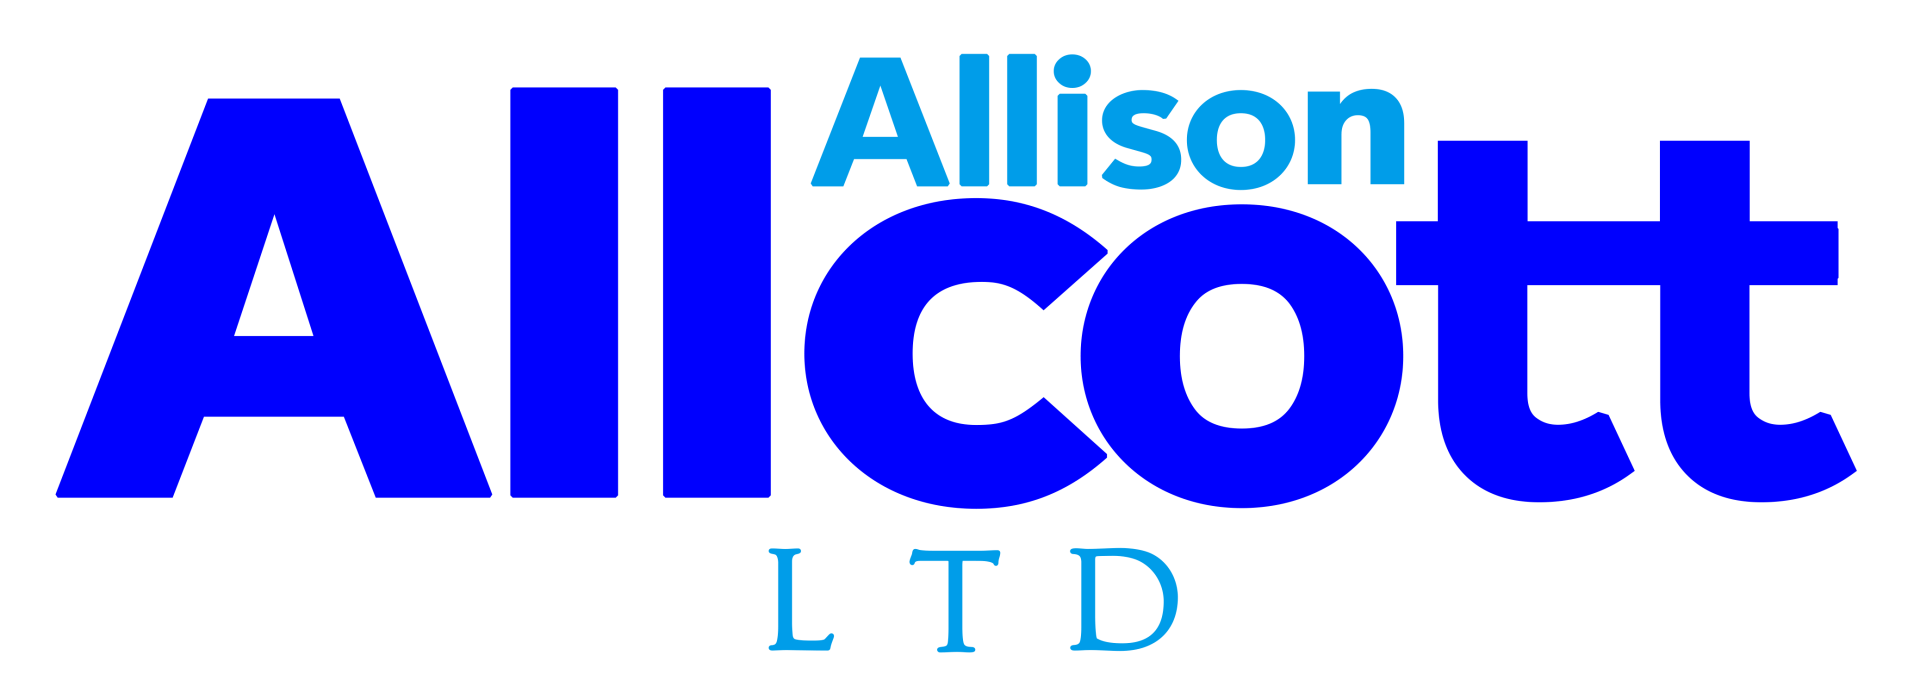 A blue and white logo for allison allcott ltd